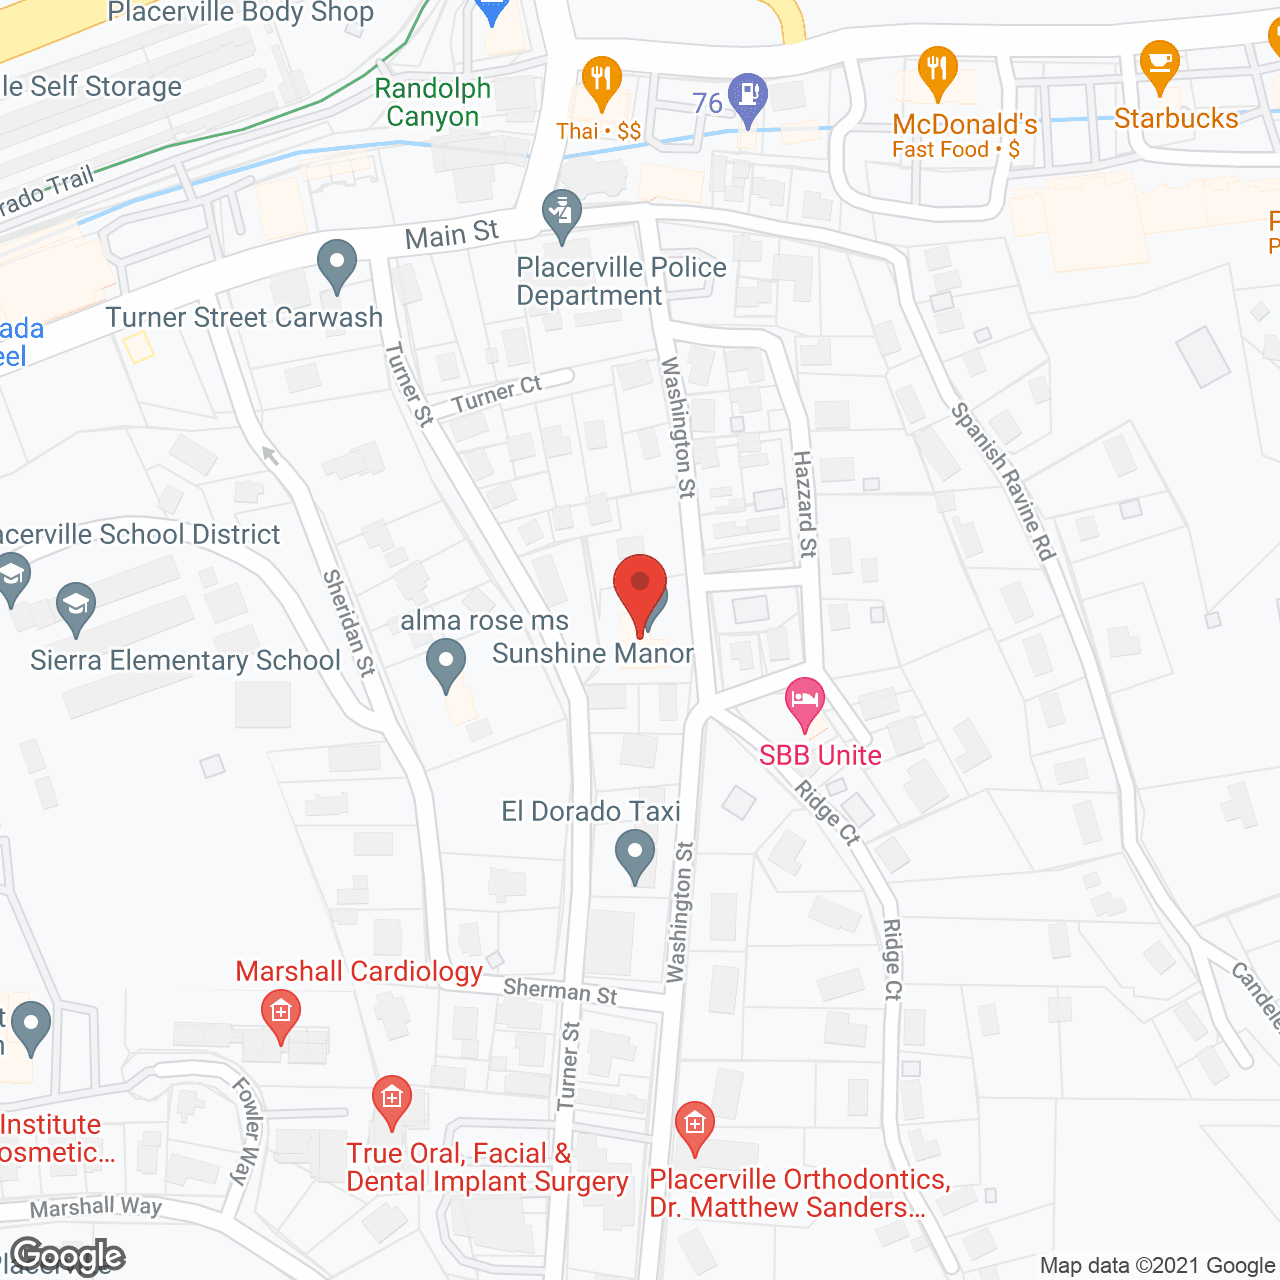 Sunshine Manor in google map